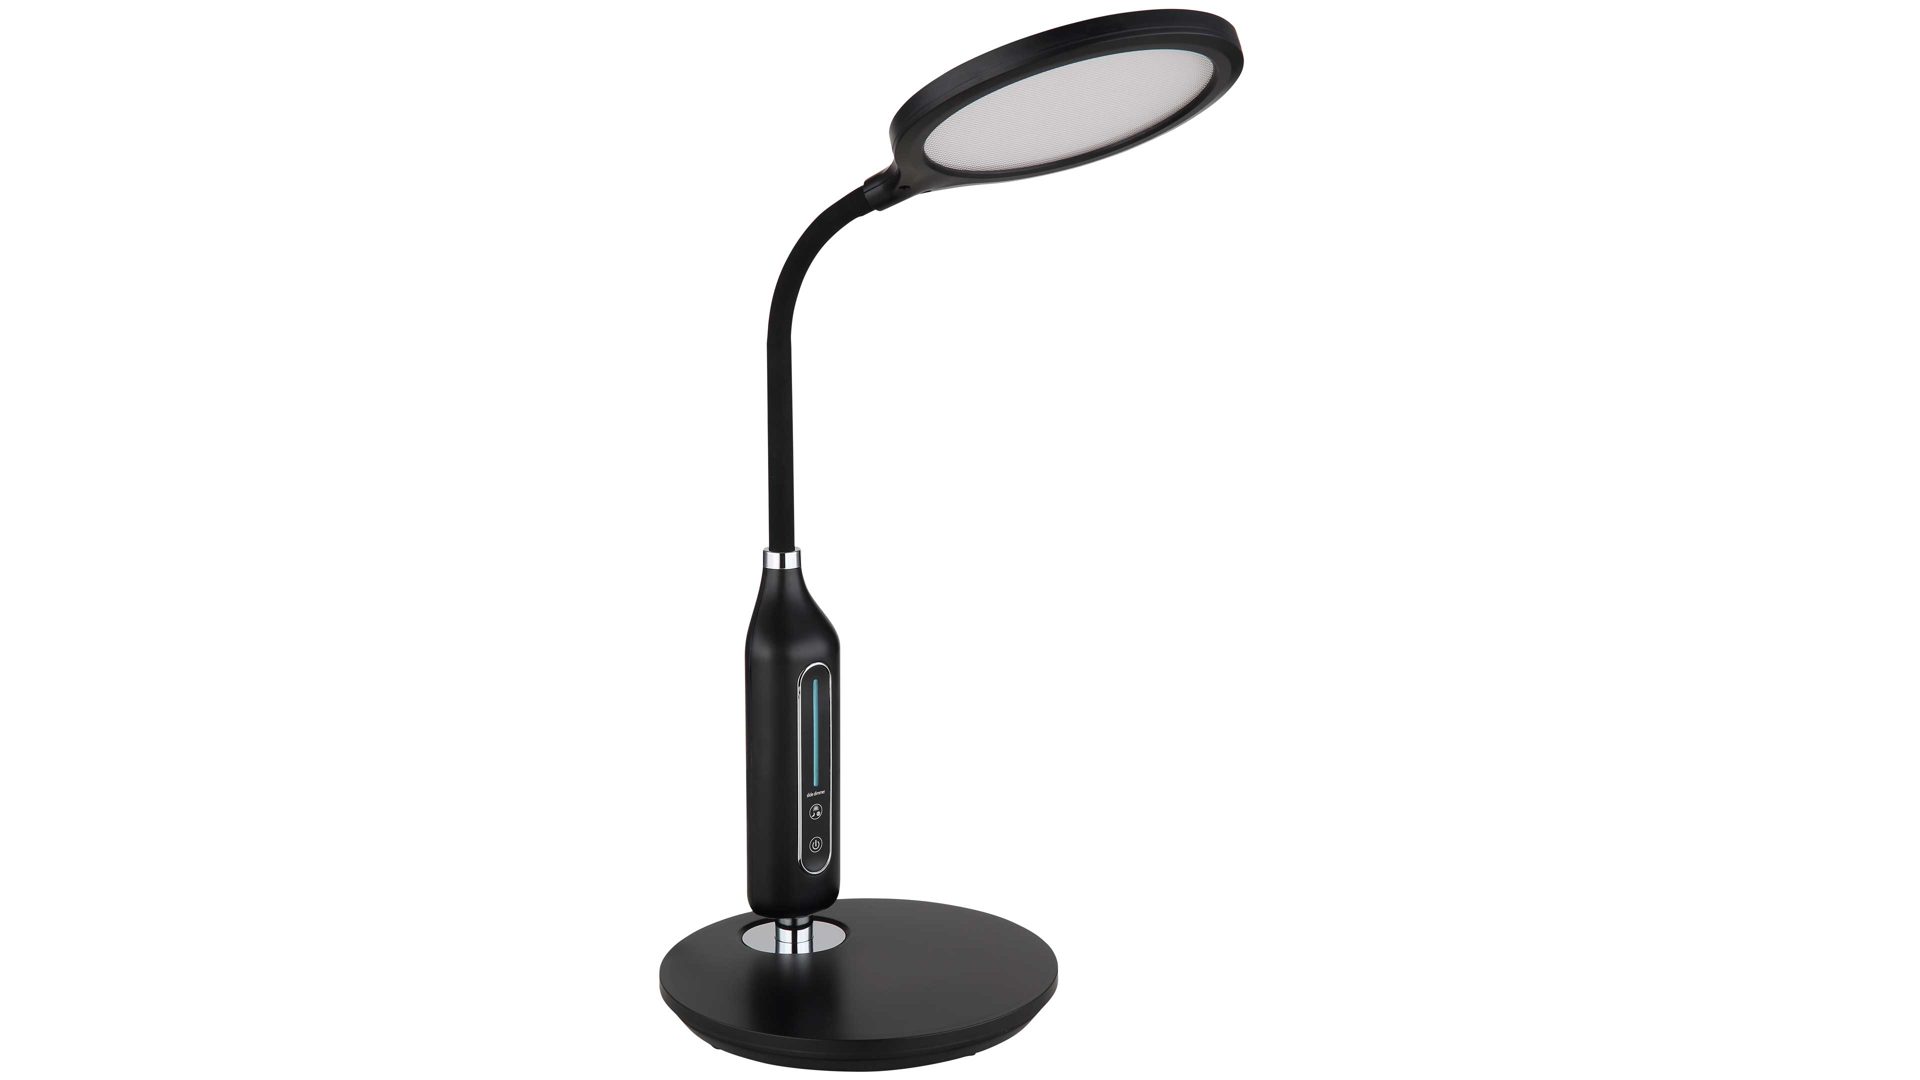 Schreibtischleuchte Globo lighting aus Kunststoff in Schwarz GLOBO Lampen Serie Fruggy - Schreibtischleuchte schwarzes Silikon - Höhe ca. 41 cm